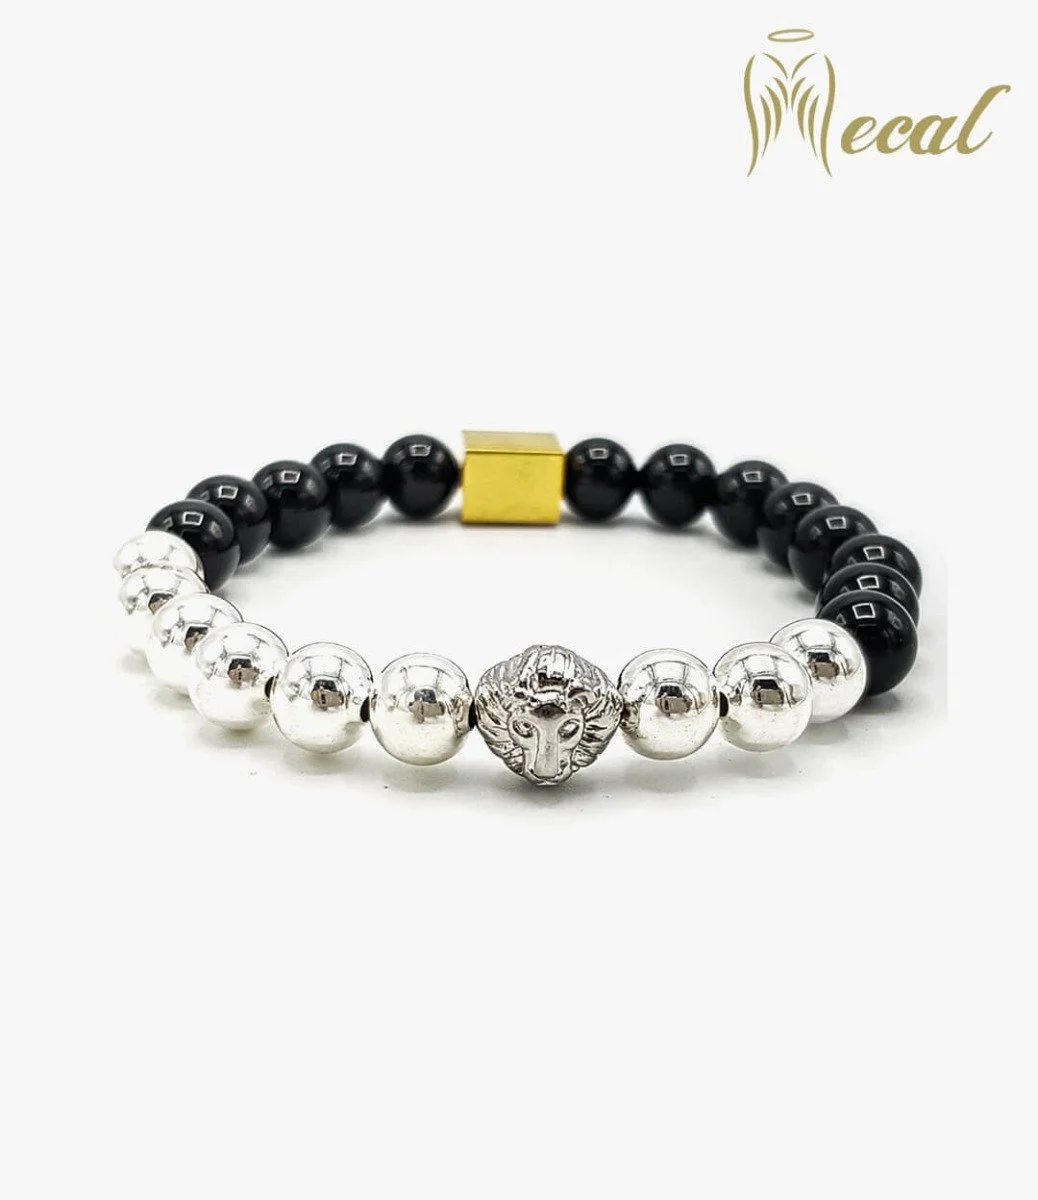 Lion Head Bracelet with Onyx Beads